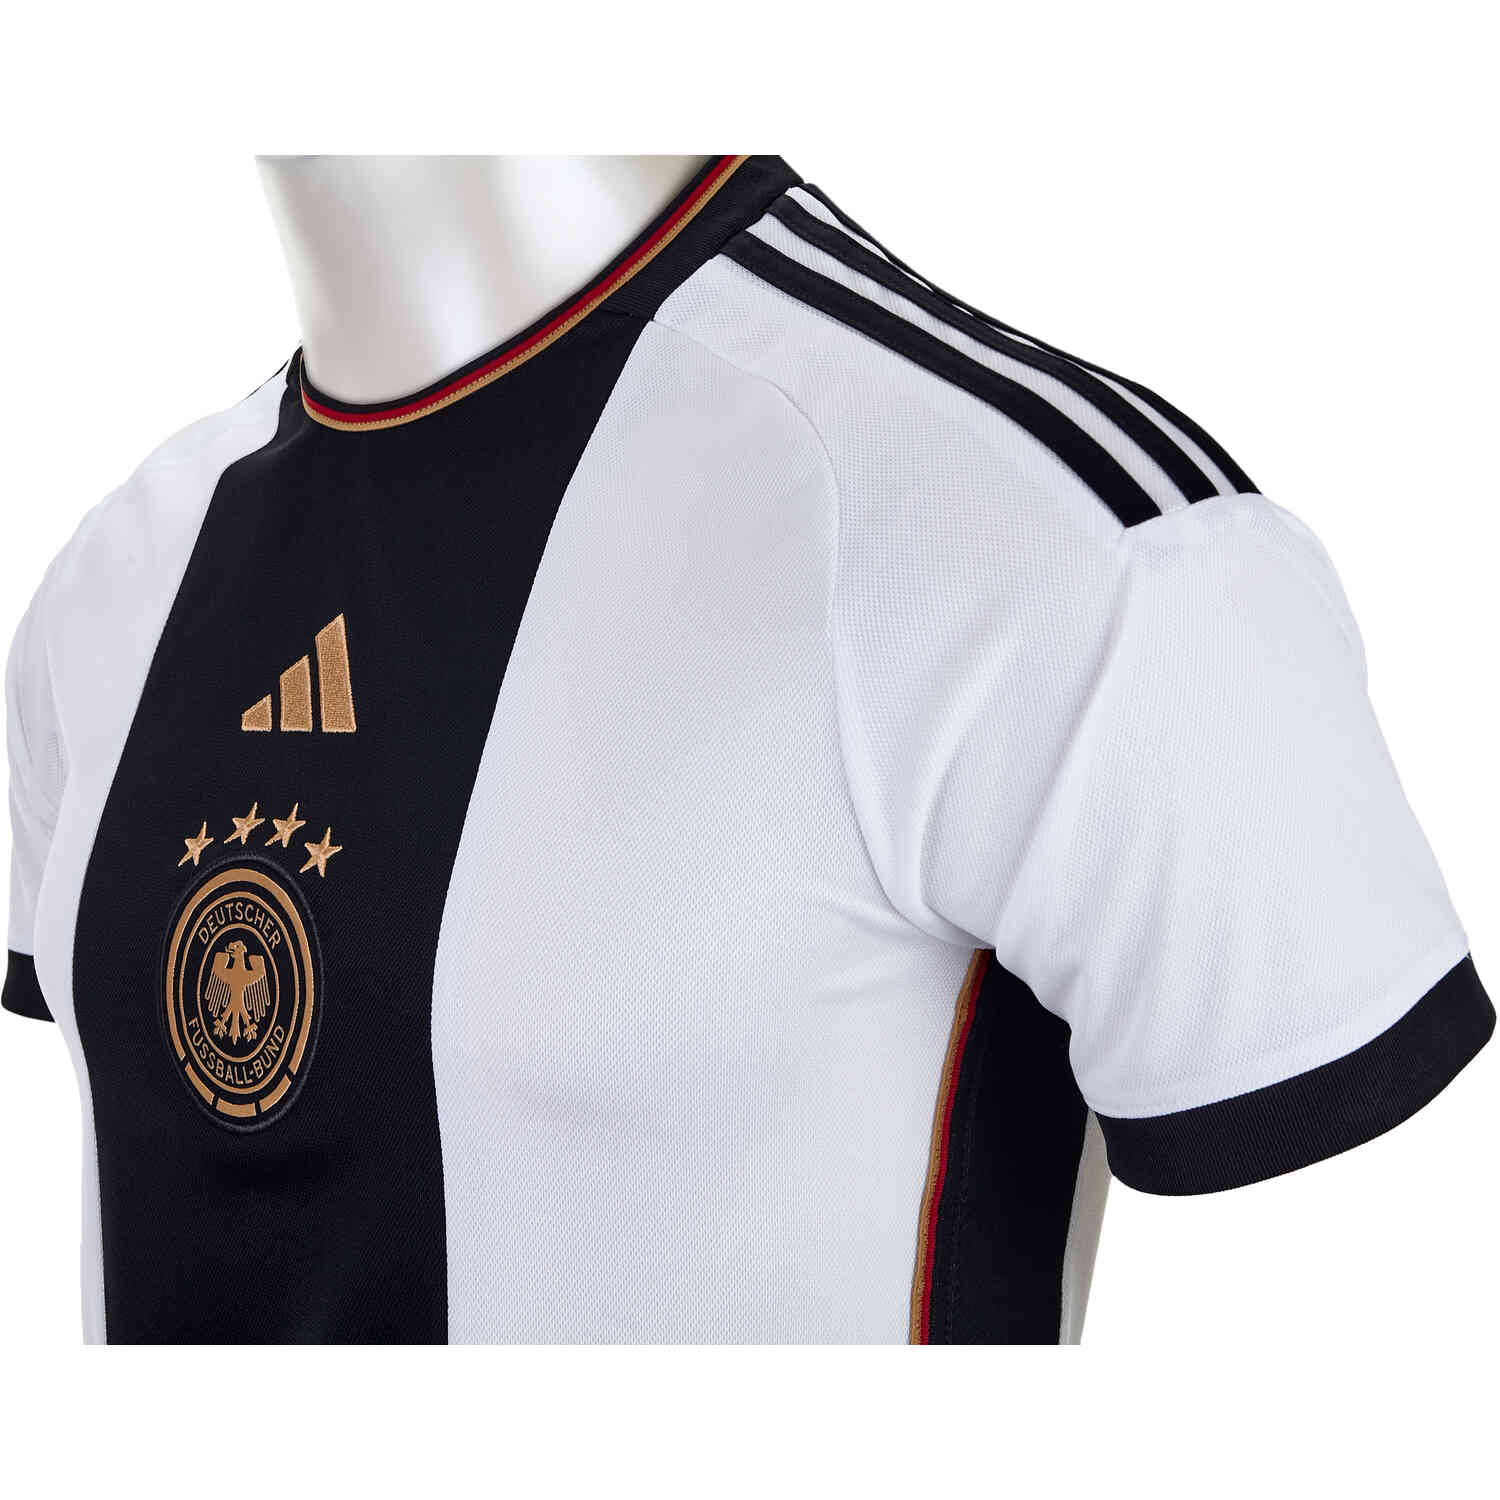 BELGIUM 2015/16 Football Shirt Soccer Jersey Fussball Trikot